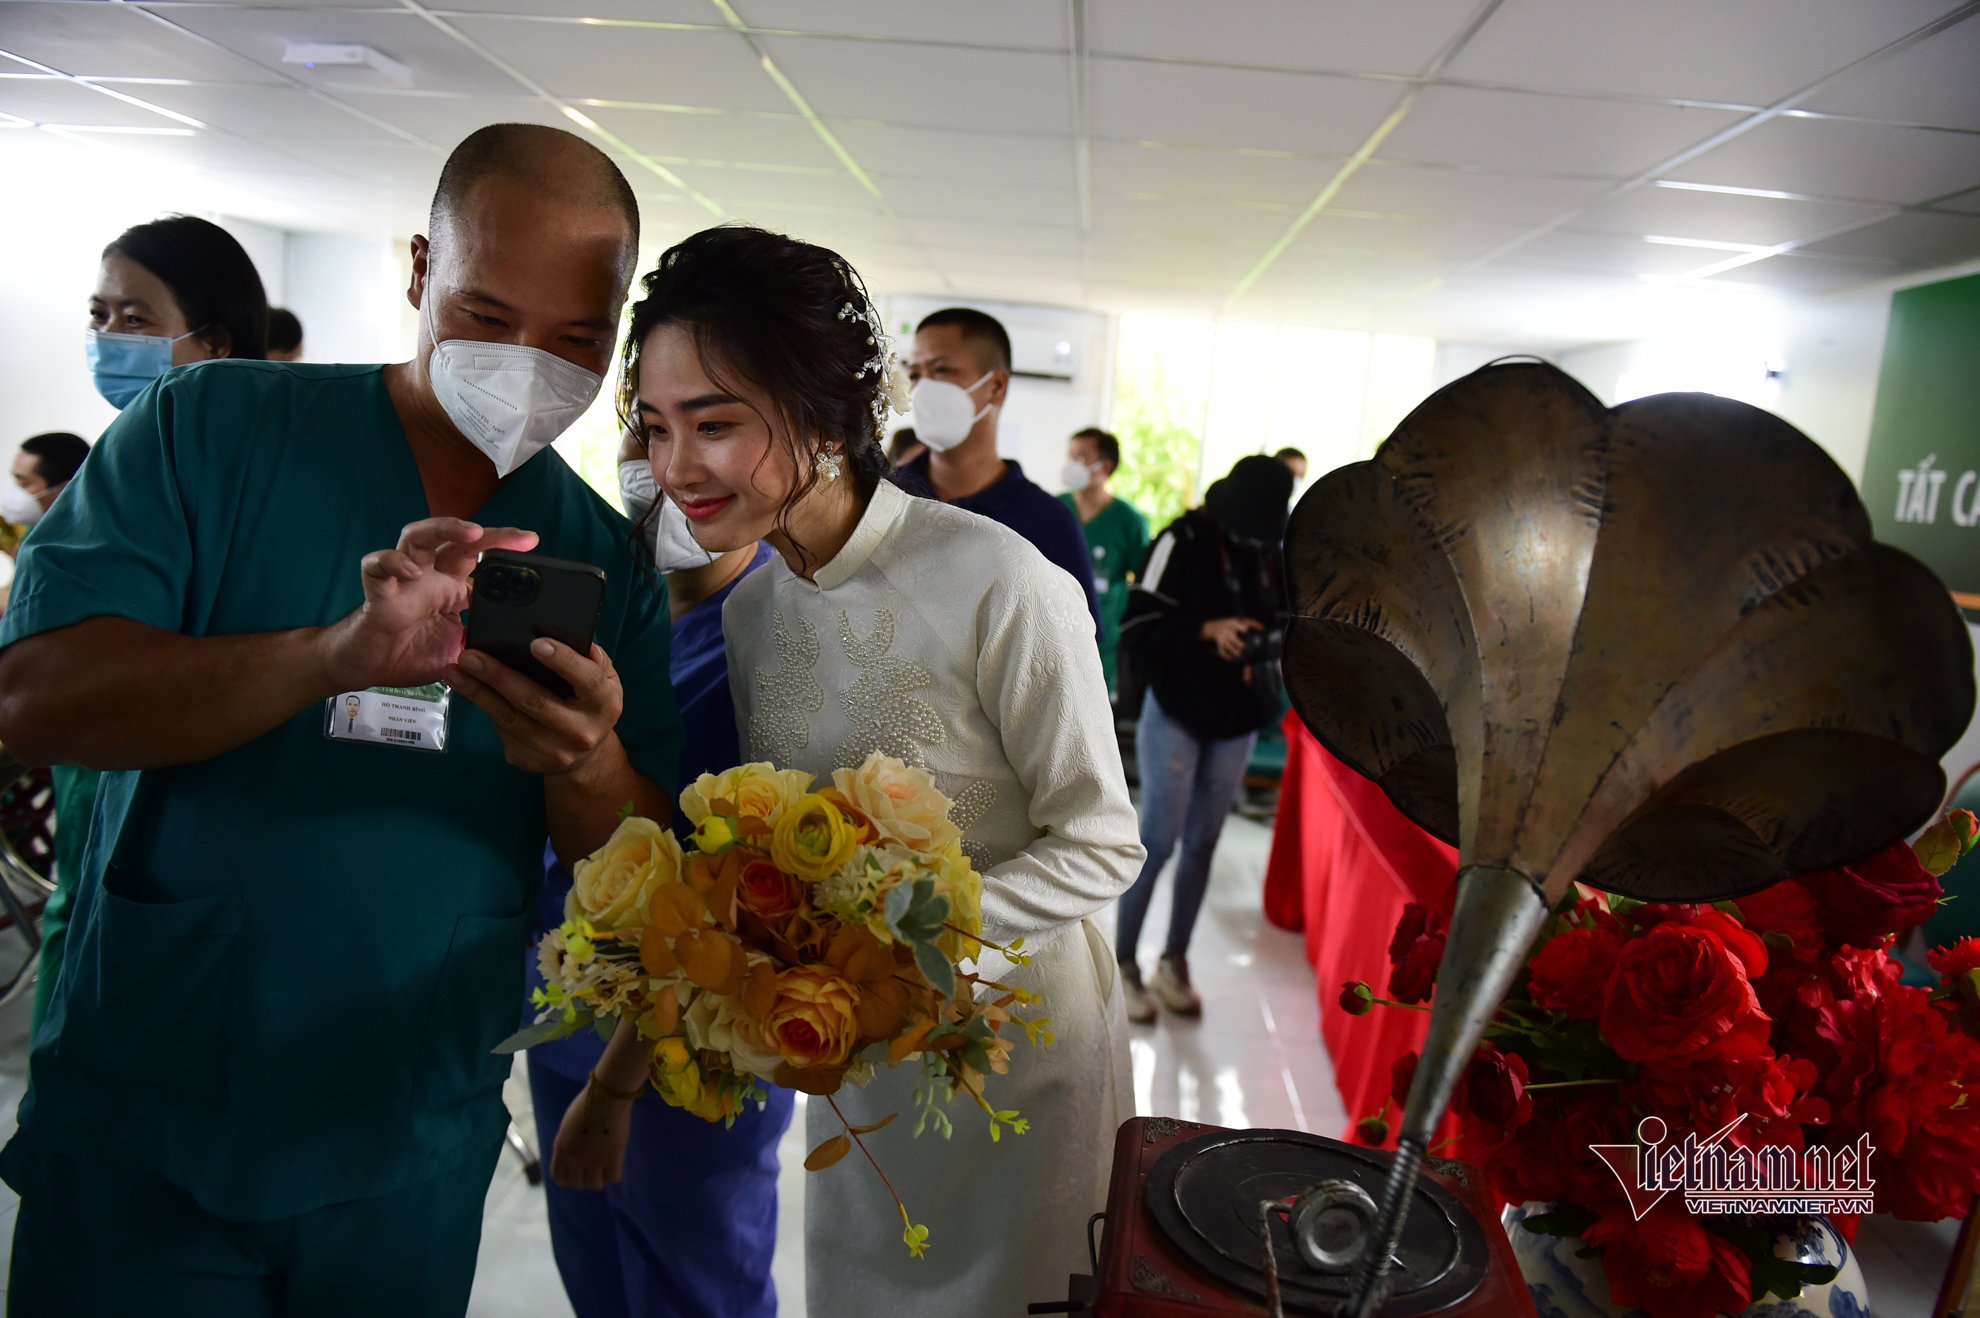 Đám cưới đặc biệt của nữ điều dưỡng trong bệnh viện dã chiến ở TP.HCM